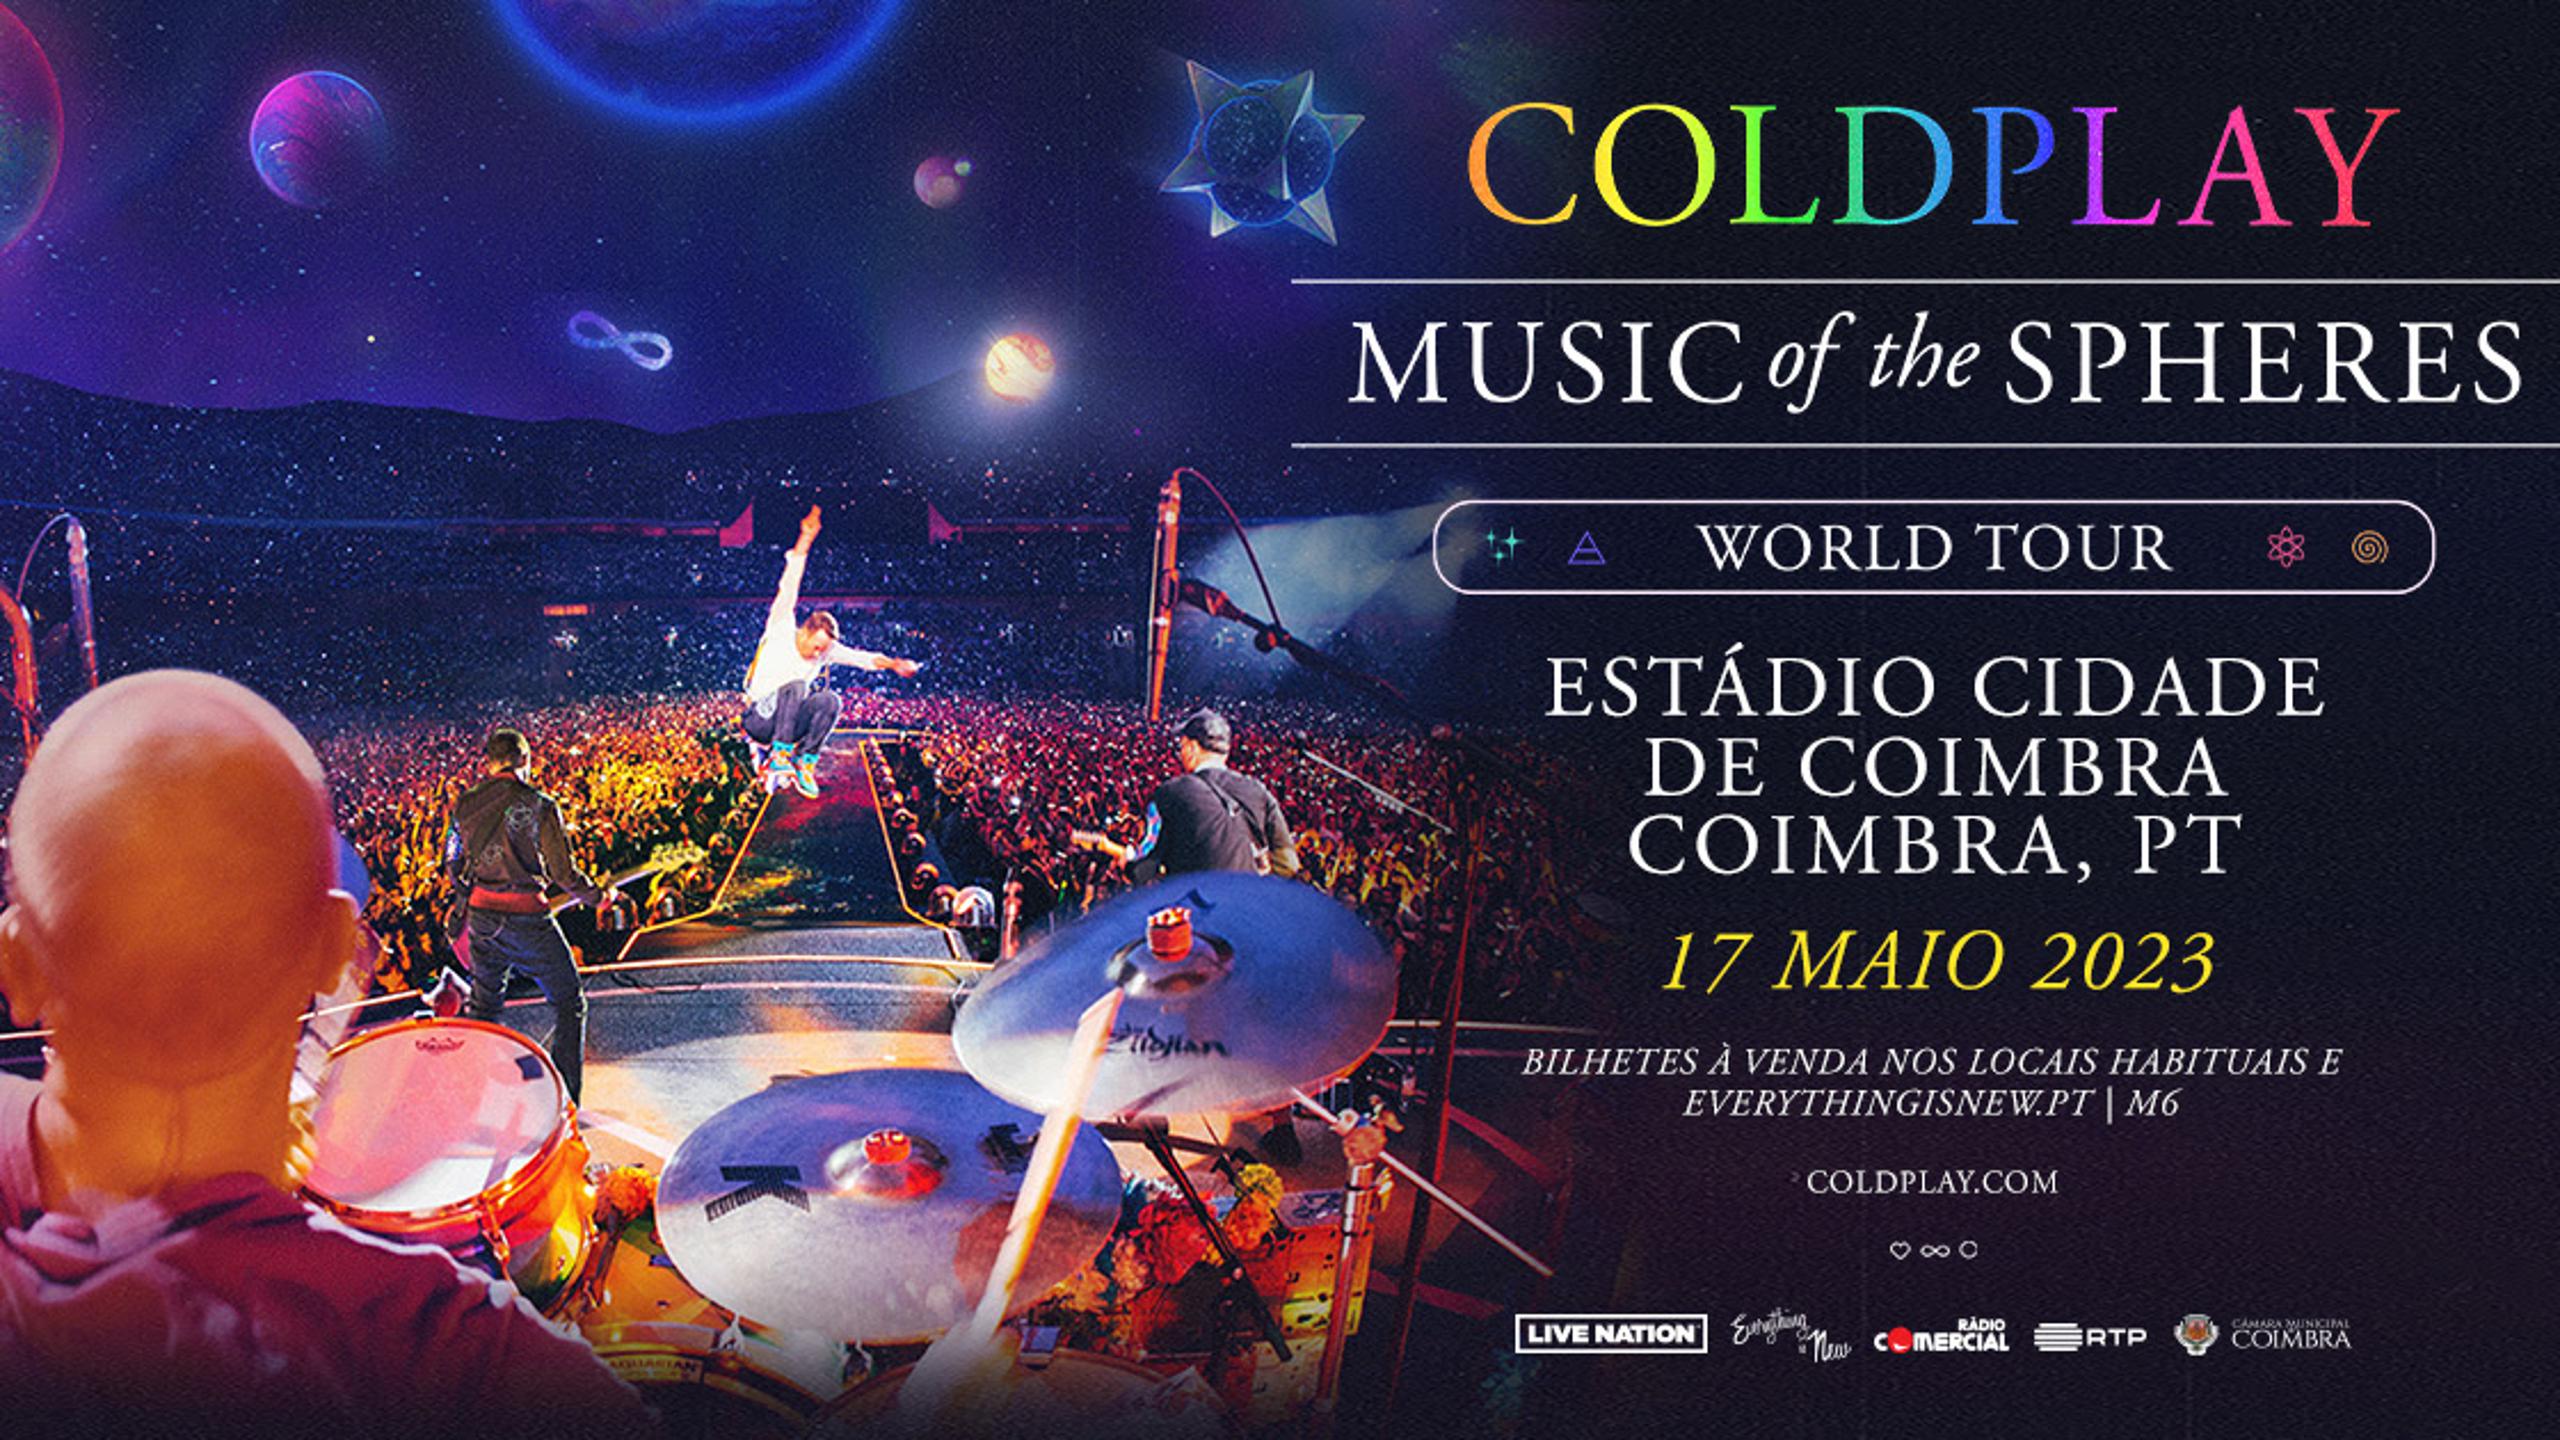 Coldplay concert tickets for Estádio Cidade de Coimbra, Coimbra